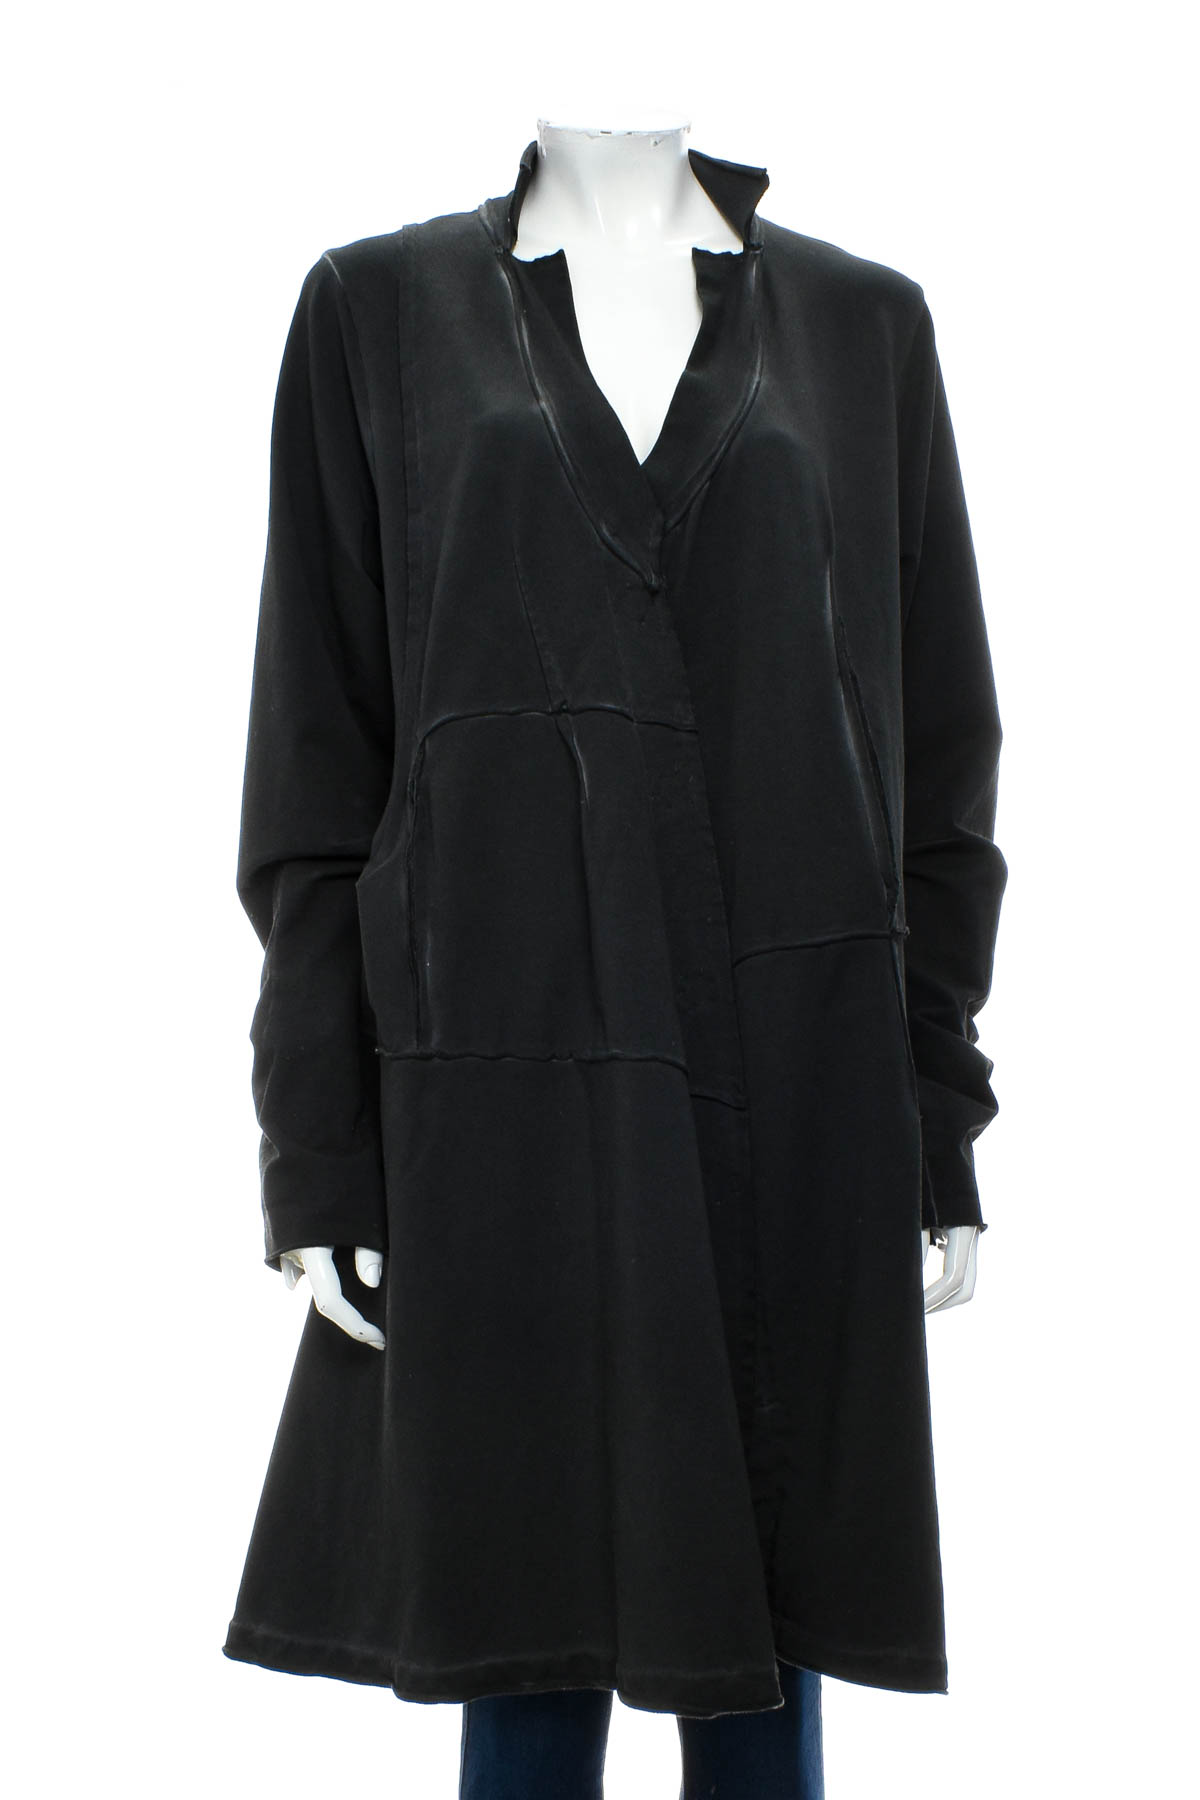 Women's coat - Barbara Speer - 0